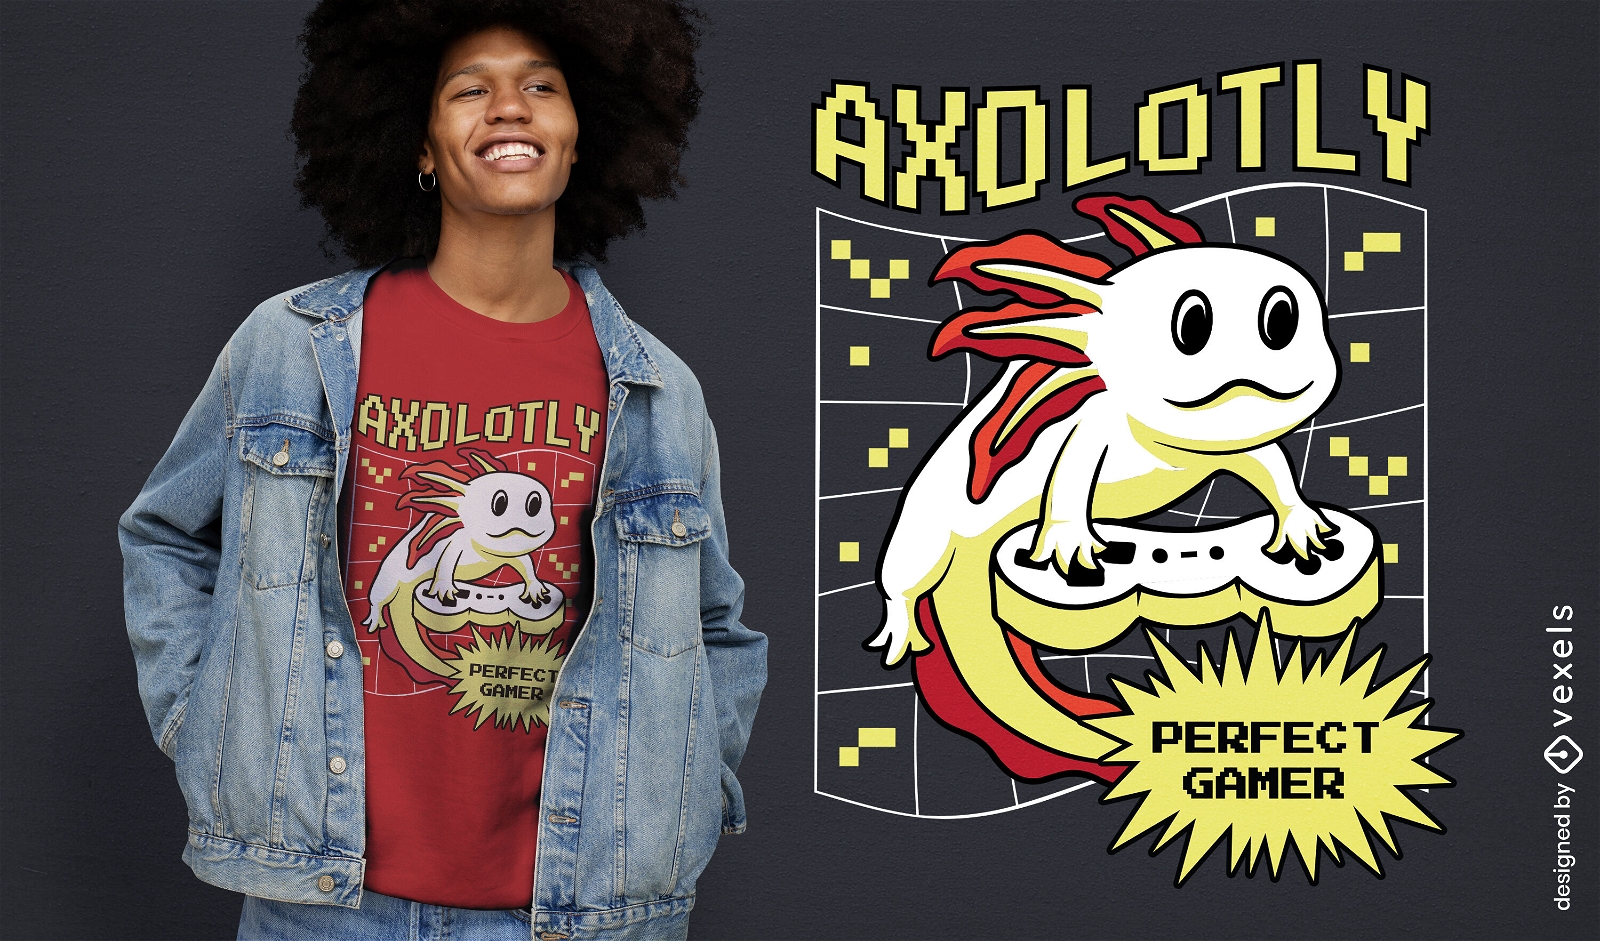 Axolotl gamer t-shirt design